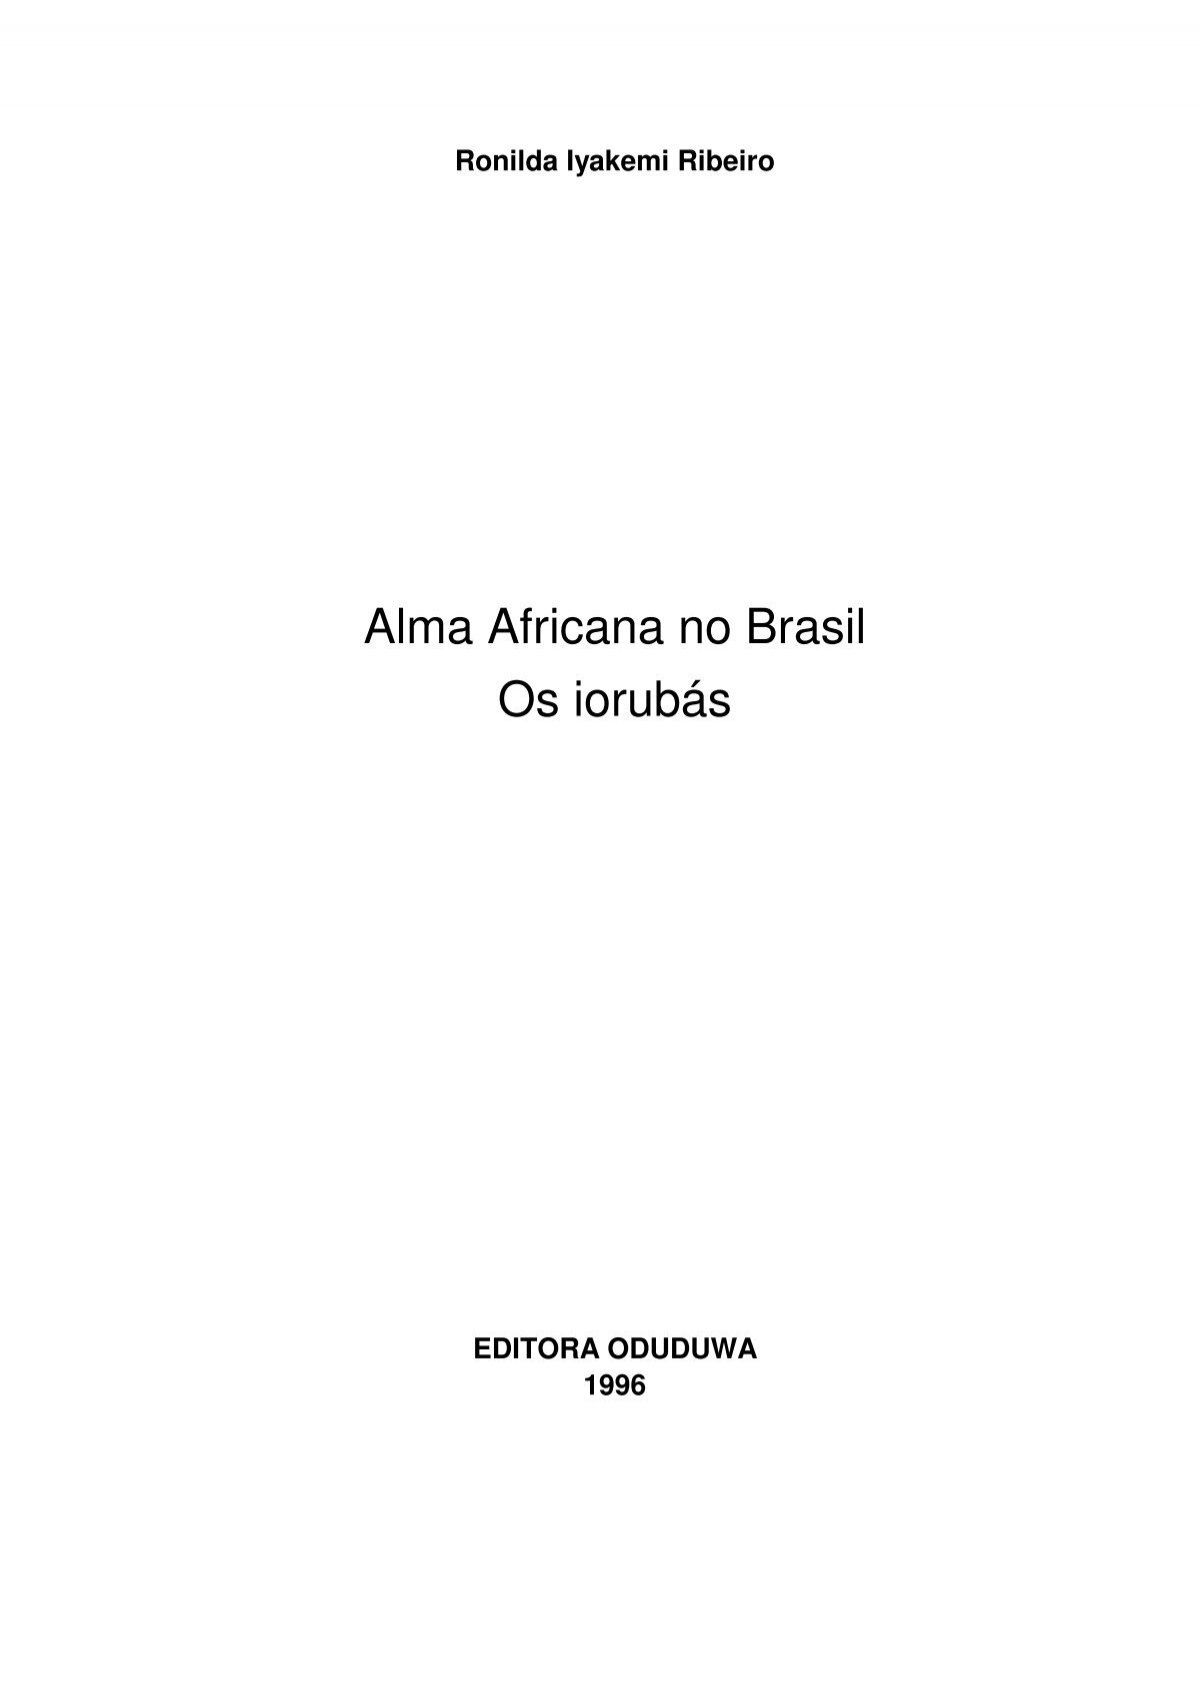 Dicionario Yoruba Portugues, PDF, Religião e crença